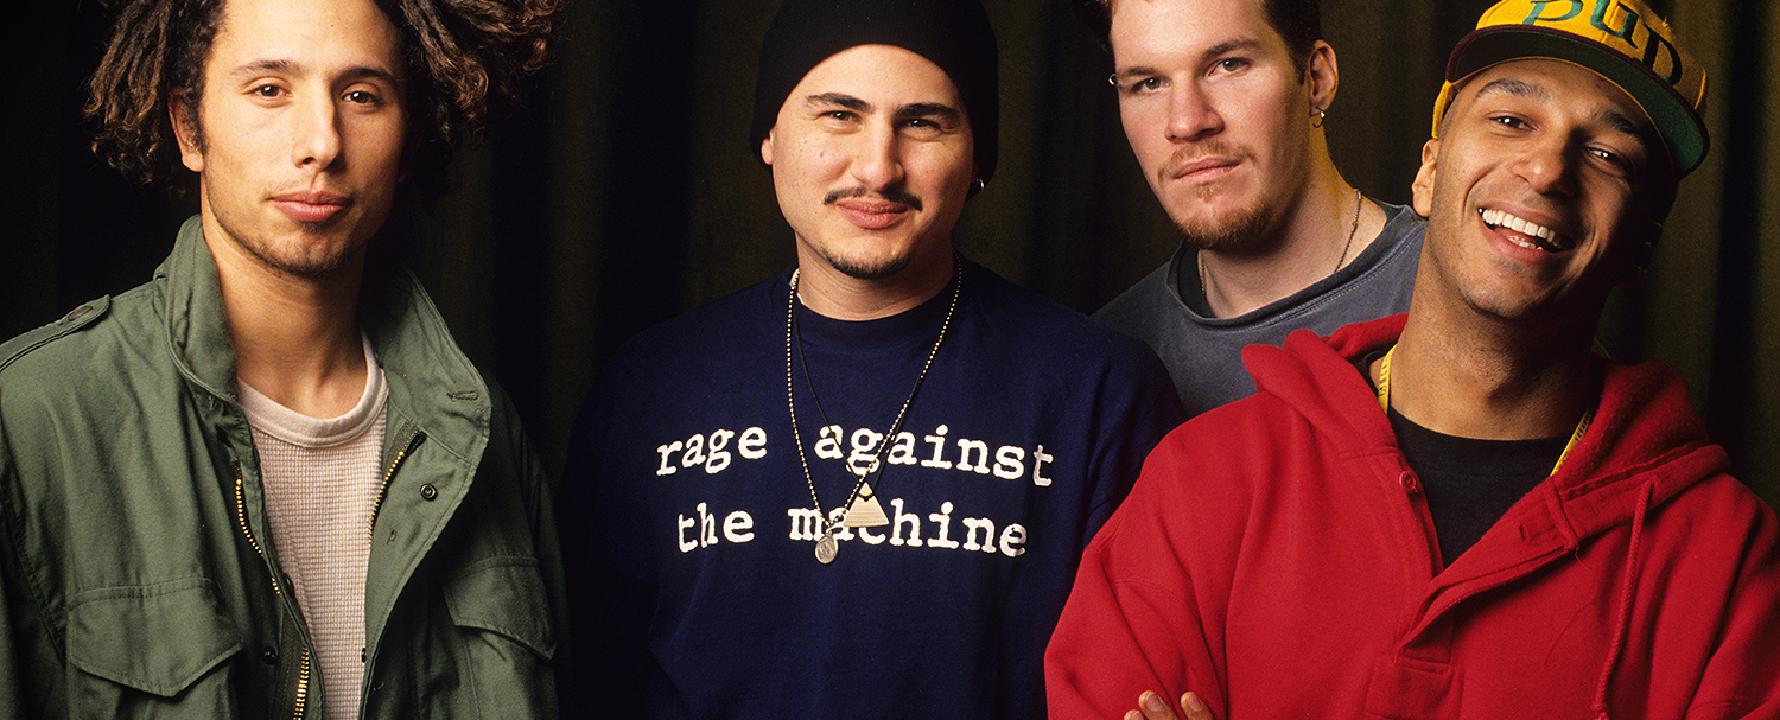 Fotografia promocional de Rage Against the Machine.